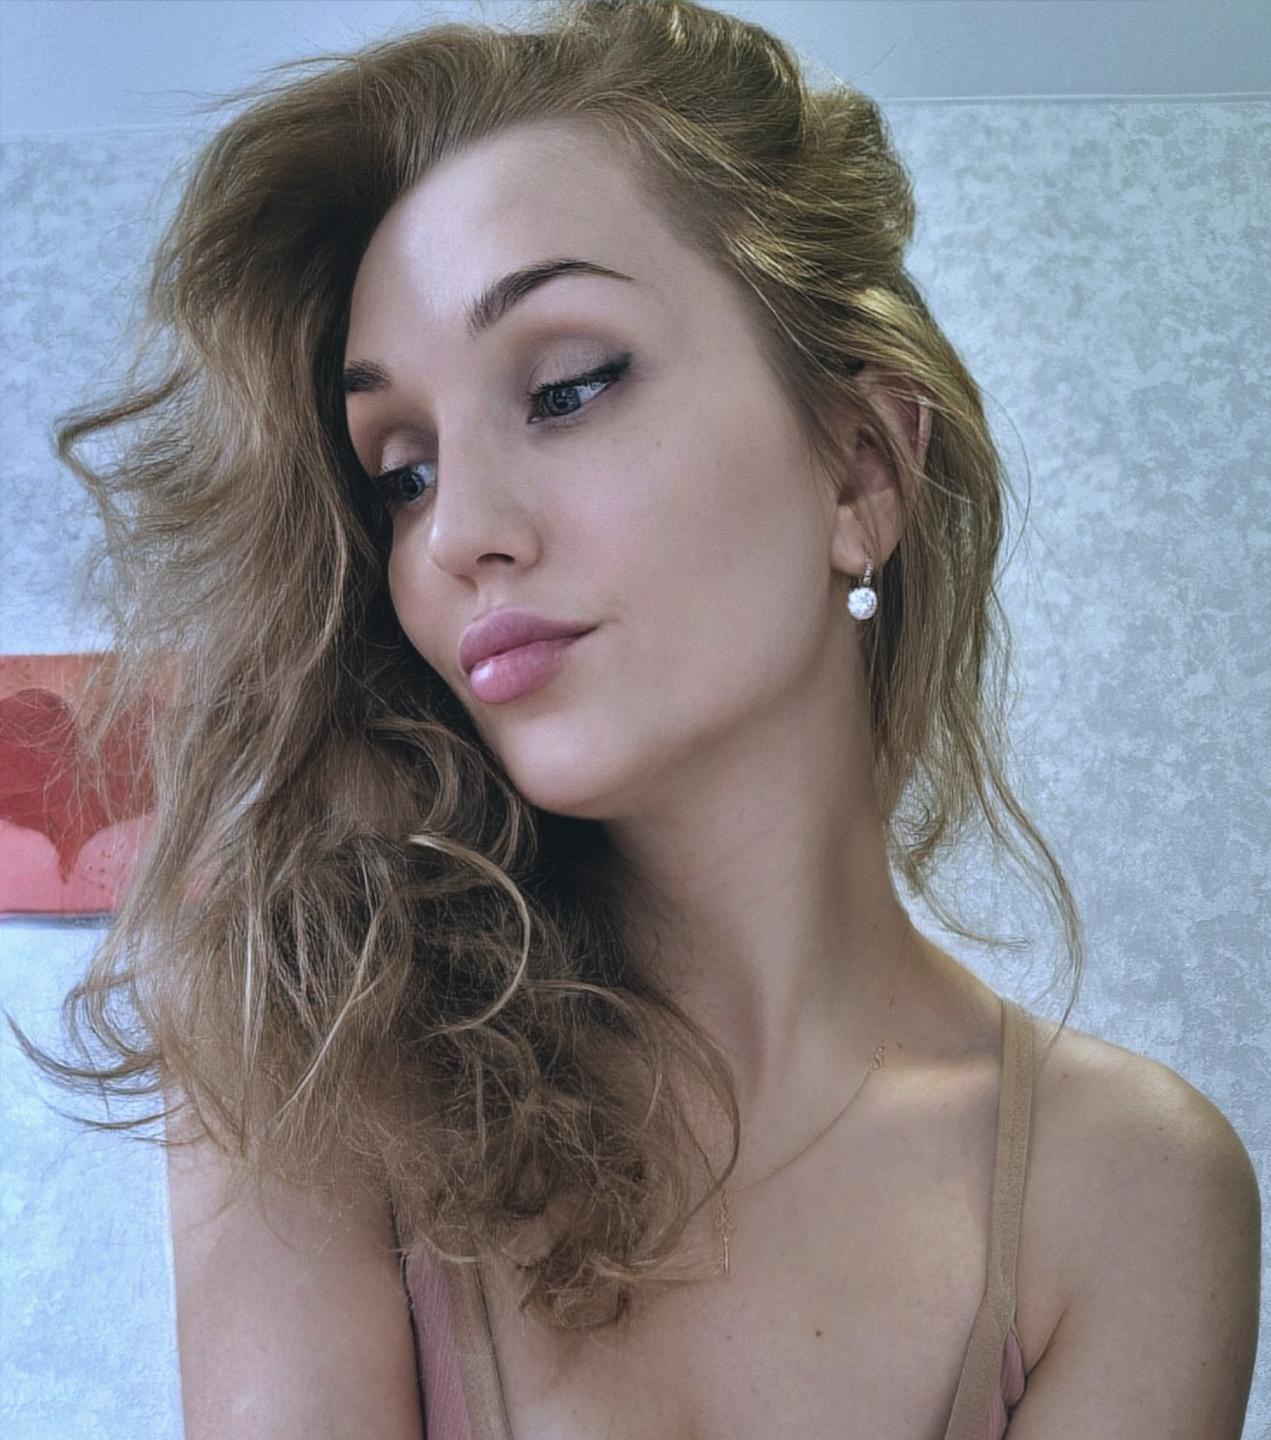 Image of cam model Angelovna from XloveCam